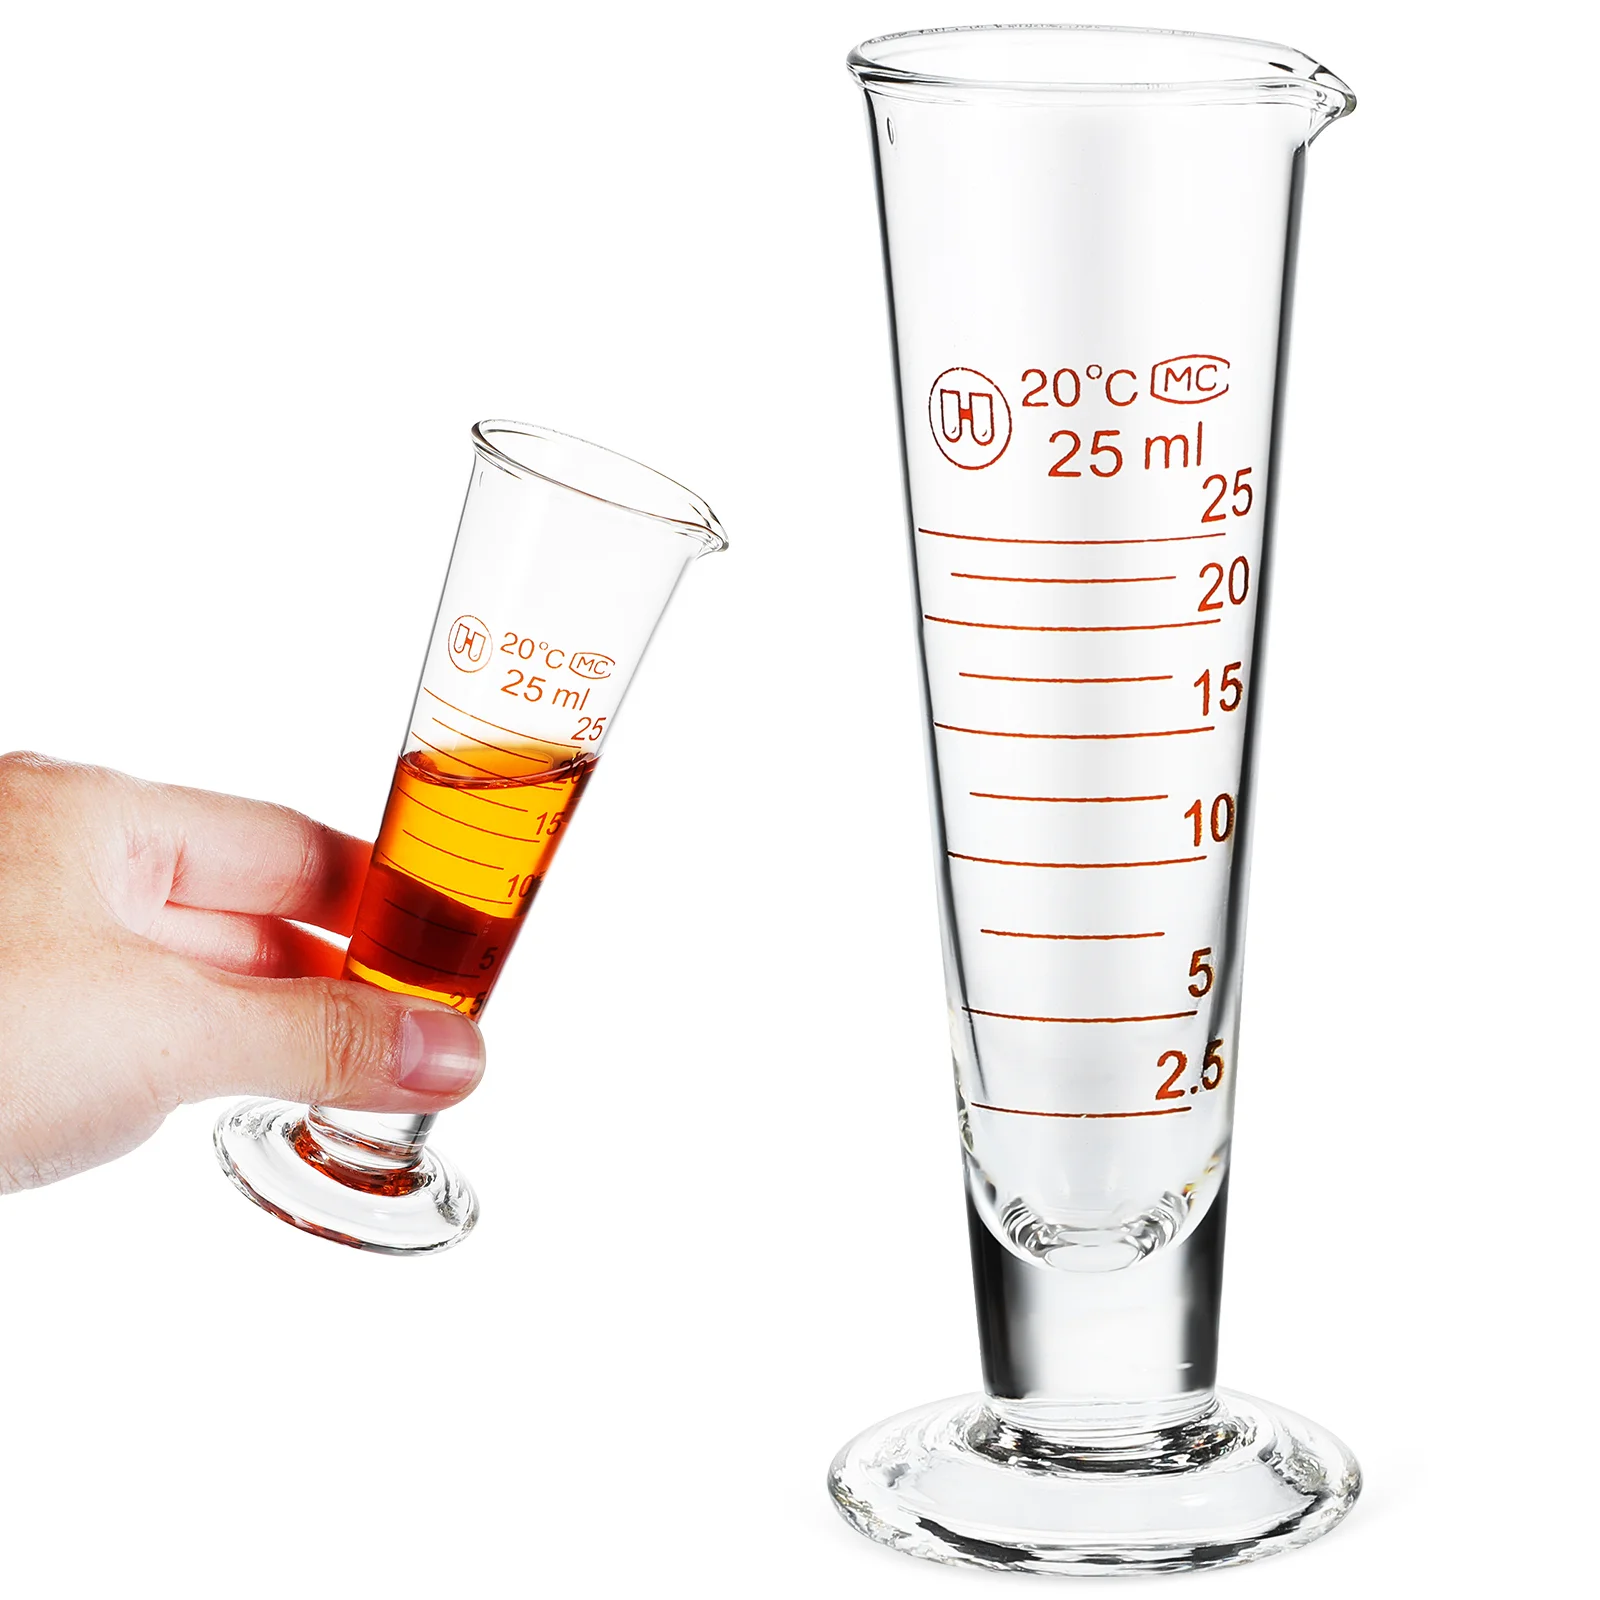 

Градуированный лабораторный мерный стакан с носиком, 25 мл